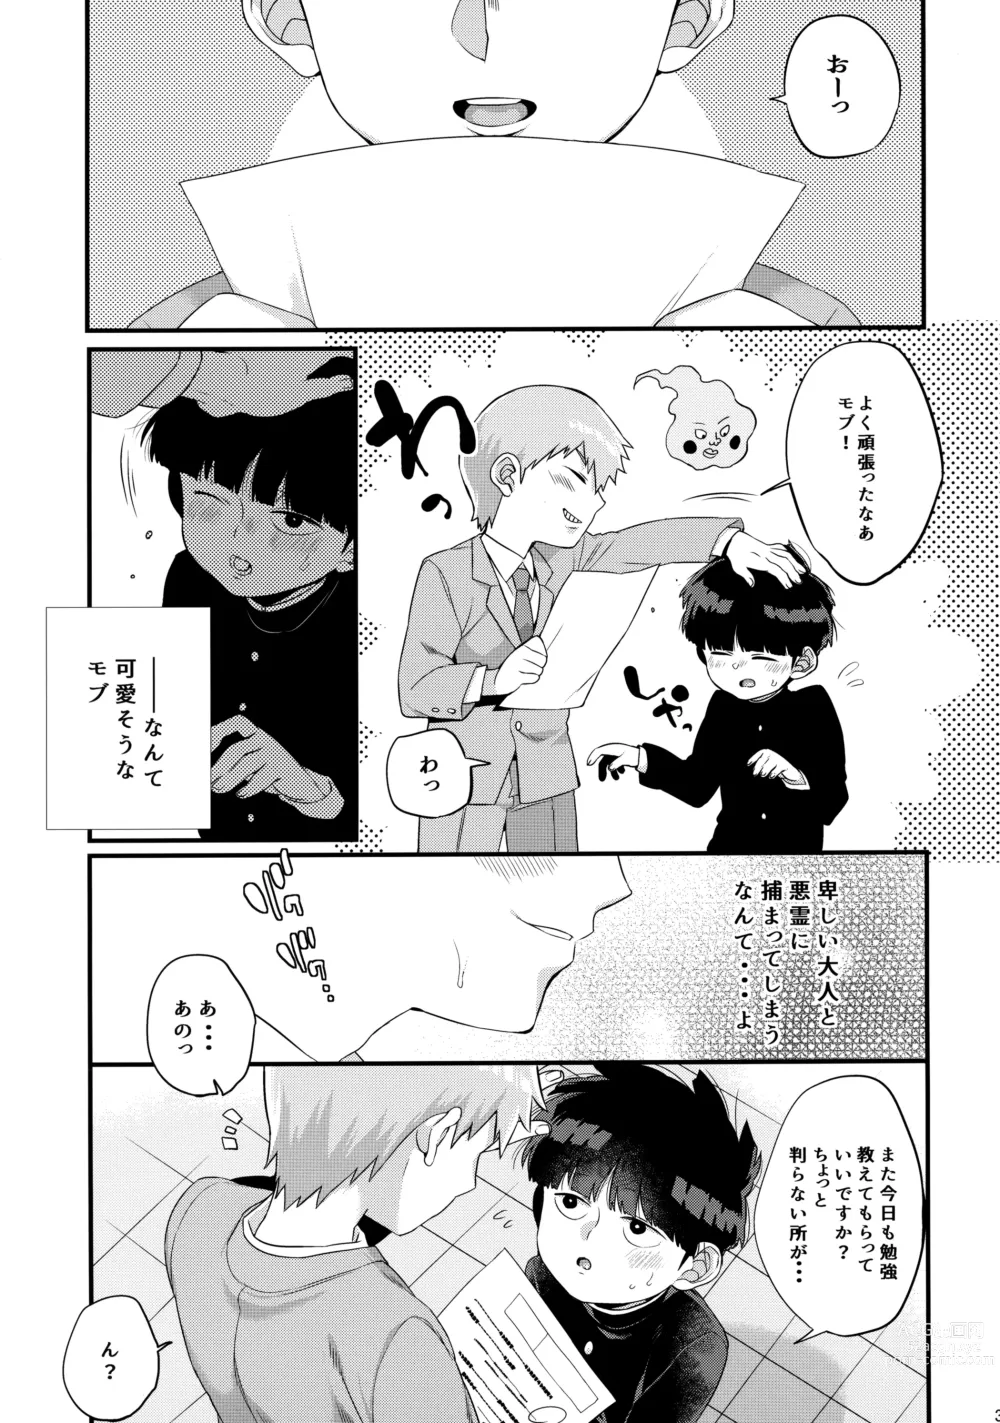 Page 38 of doujinshi Boku ni wa, Sensei ga Futari Iru